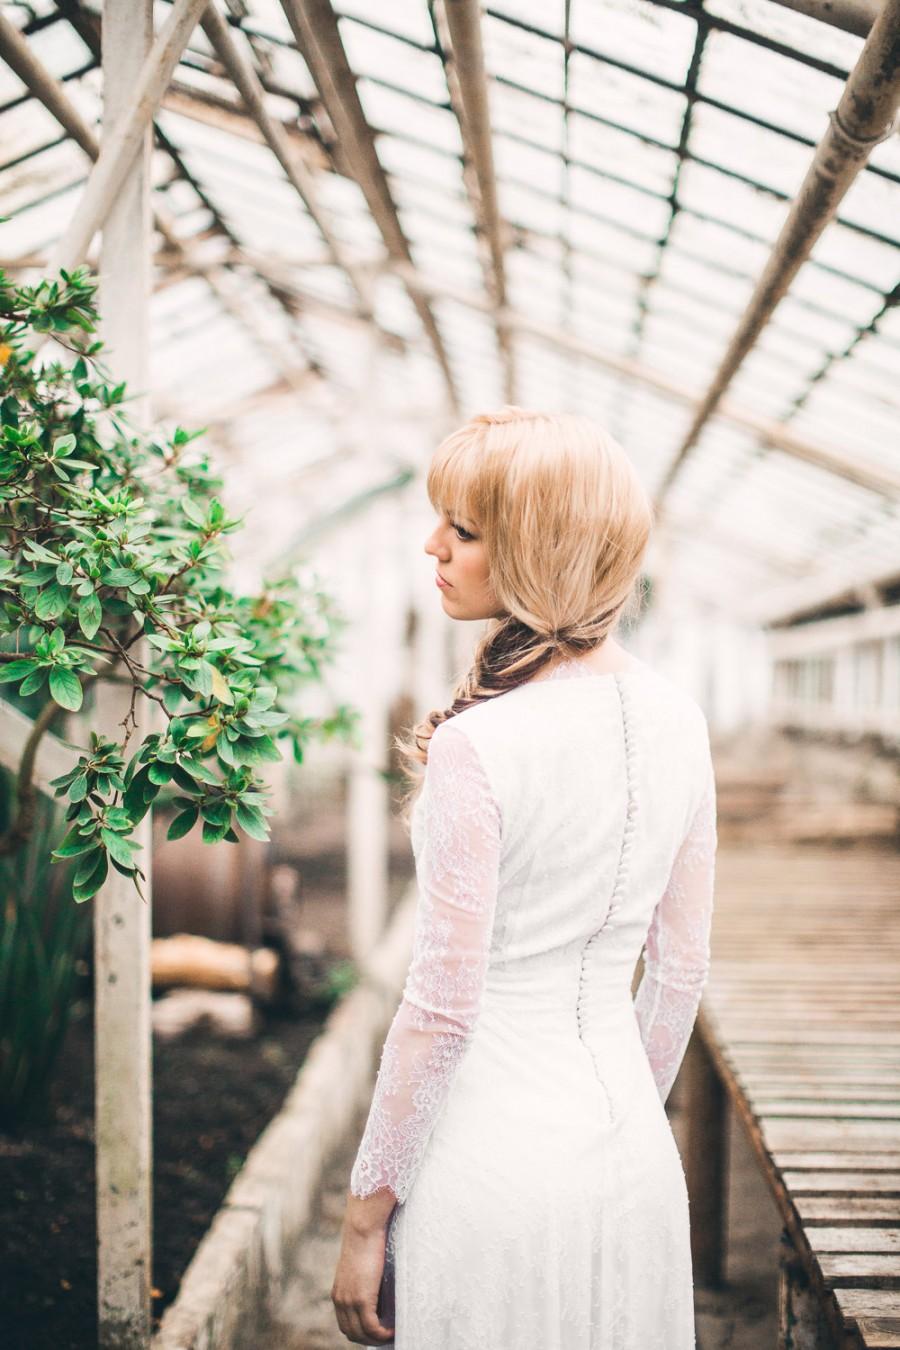 زفاف - Saple sale, one size only - s-m / Vintage inspired white long sleeve lace wedding dress